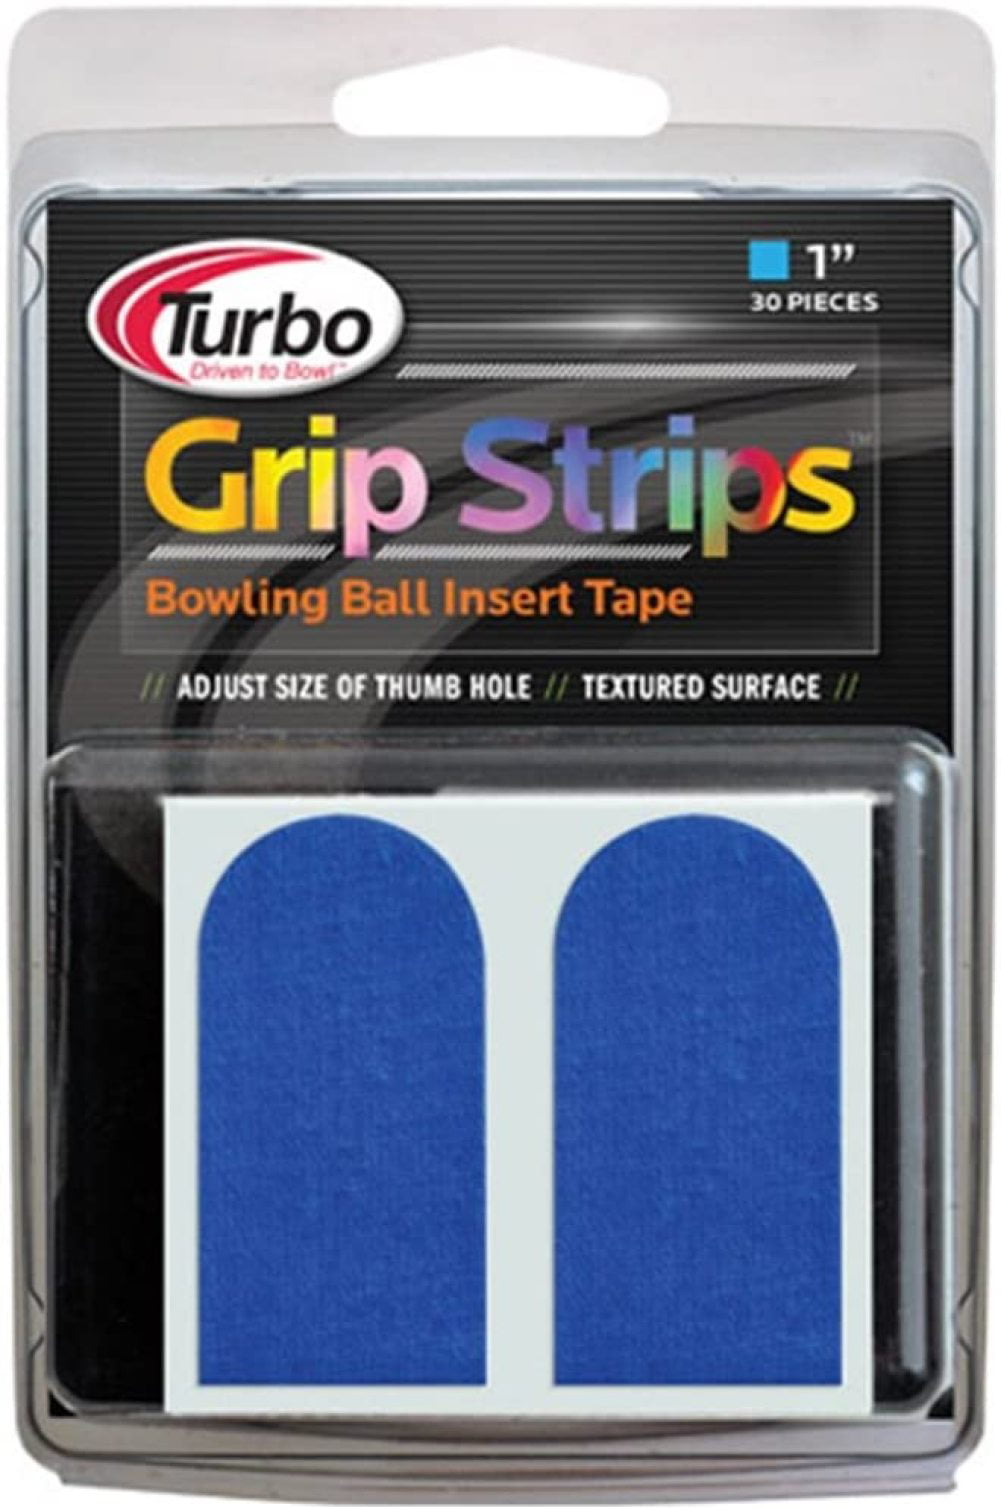 Turbo Driven to Bowl Logo Tape Pre-Cut 1" Blue Finger Tape 30 pcs 